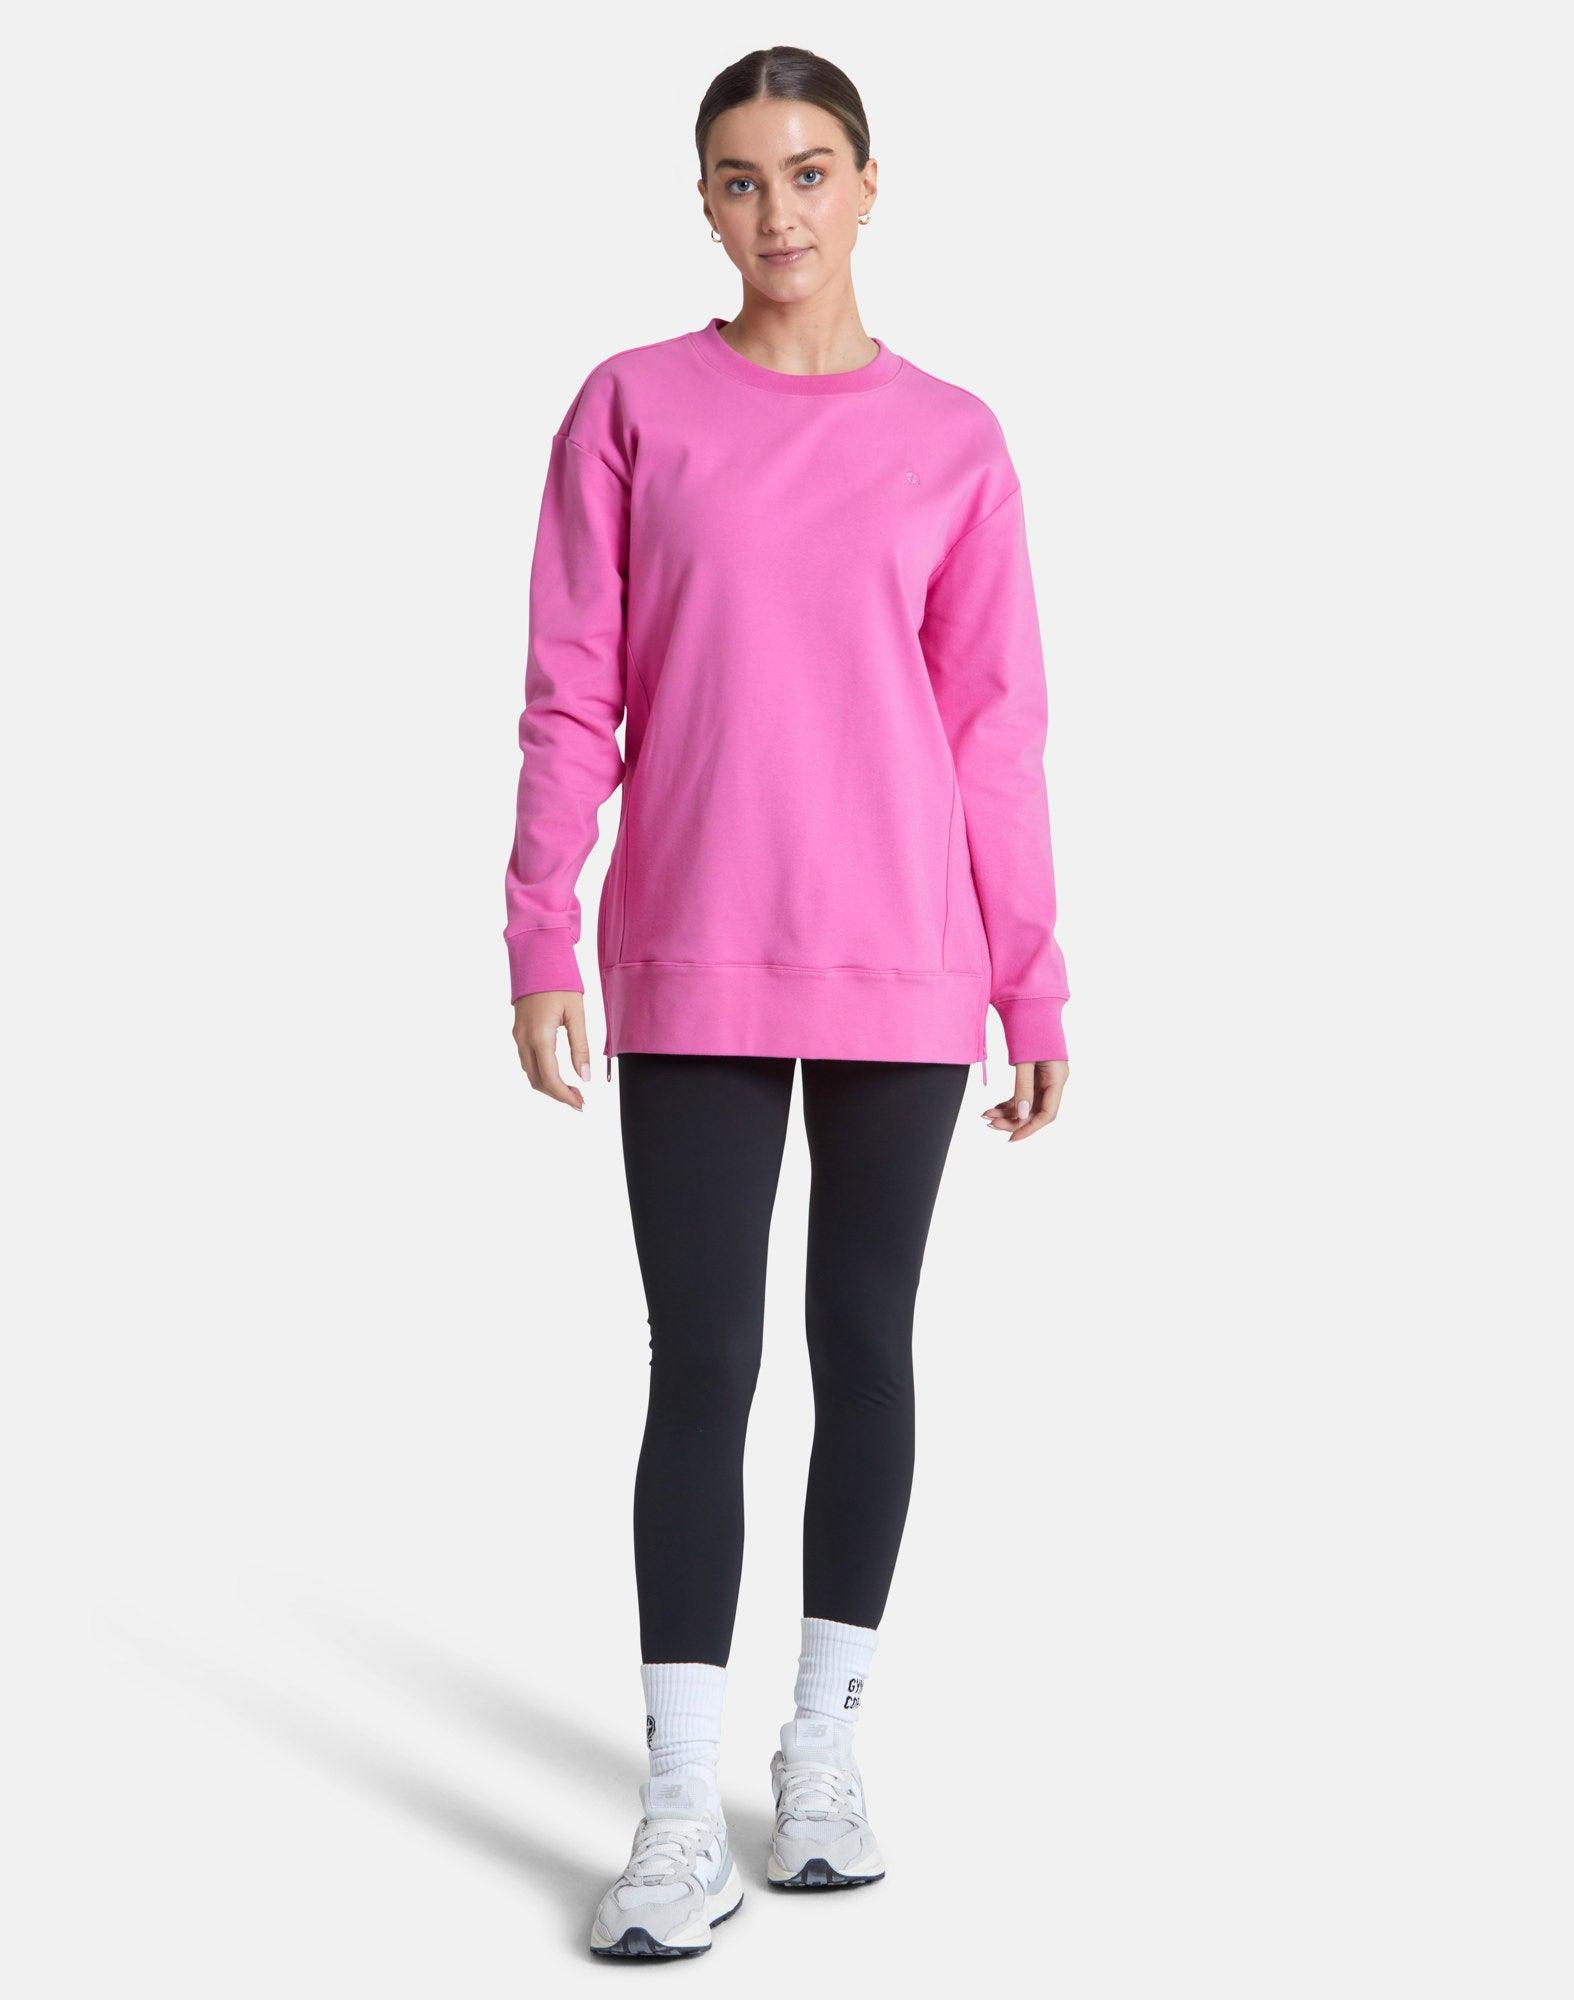 Essential Longline Crew in Empower Pink - Sweatshirts - Gym+Coffee